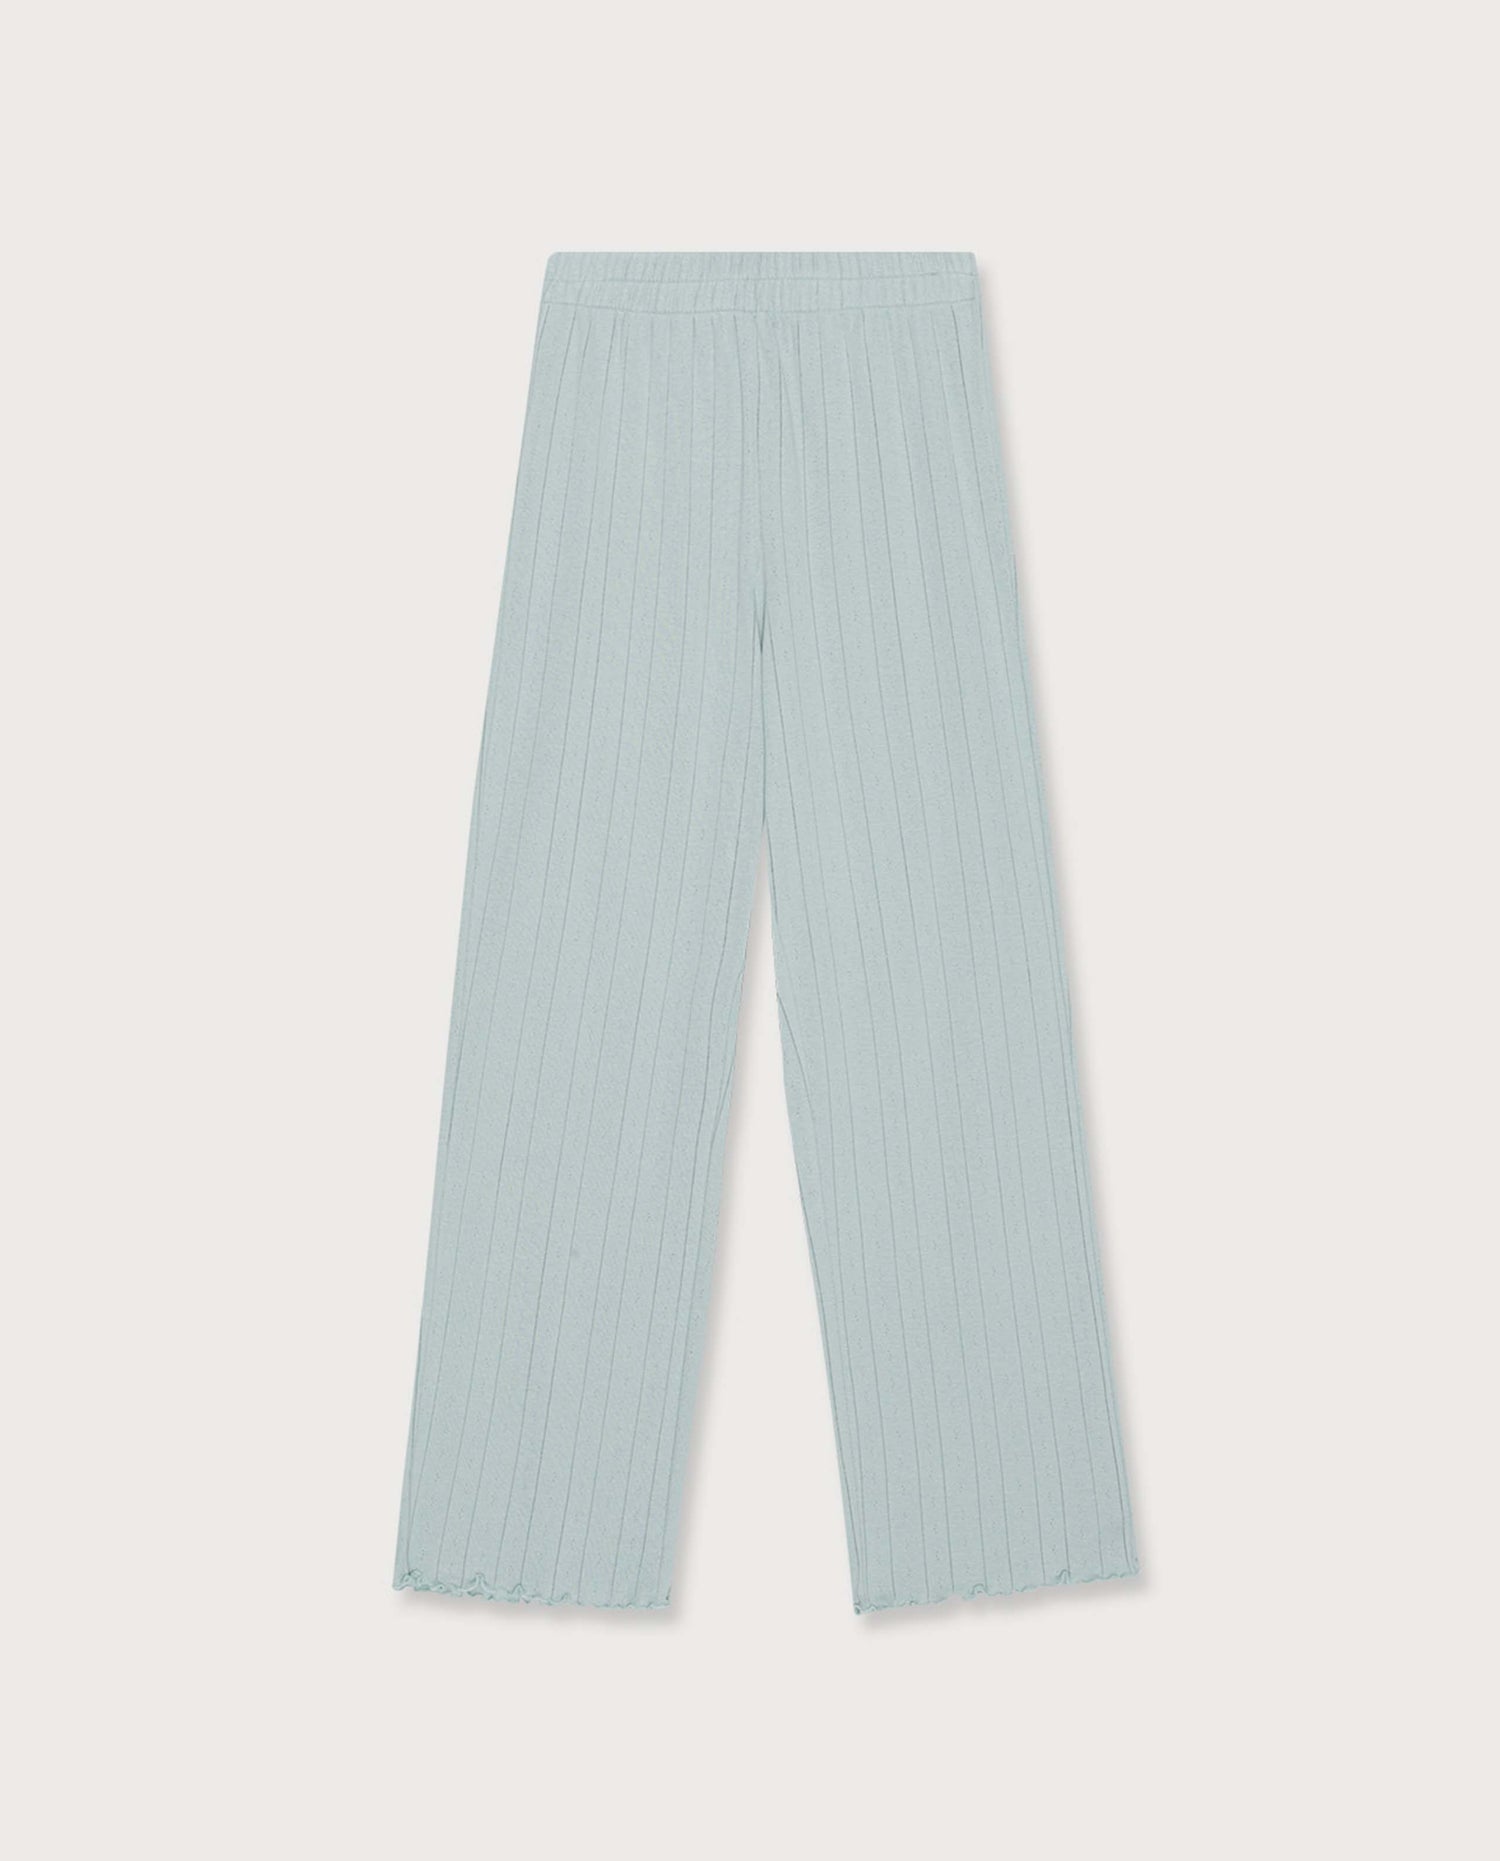 marché commun organic basics pantalon pointelle coton biologique homewear loungewear femme bleu ciel